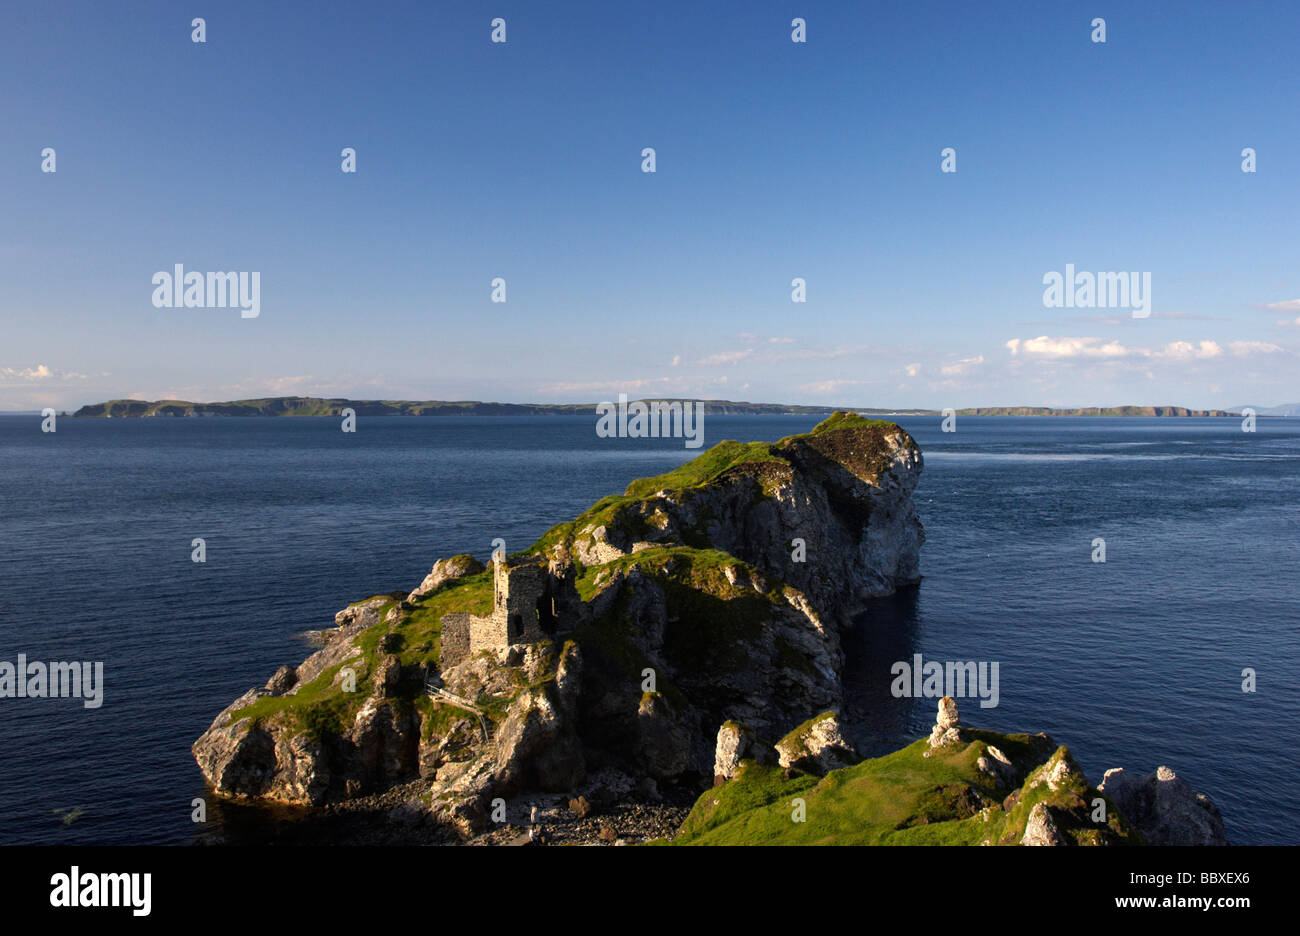 Kinbane castle et kinbane head blanc pointe avec la moyle, mer et l'île de Rathlin dans l'arrière-plan Amérique du comté d'Antrim Banque D'Images